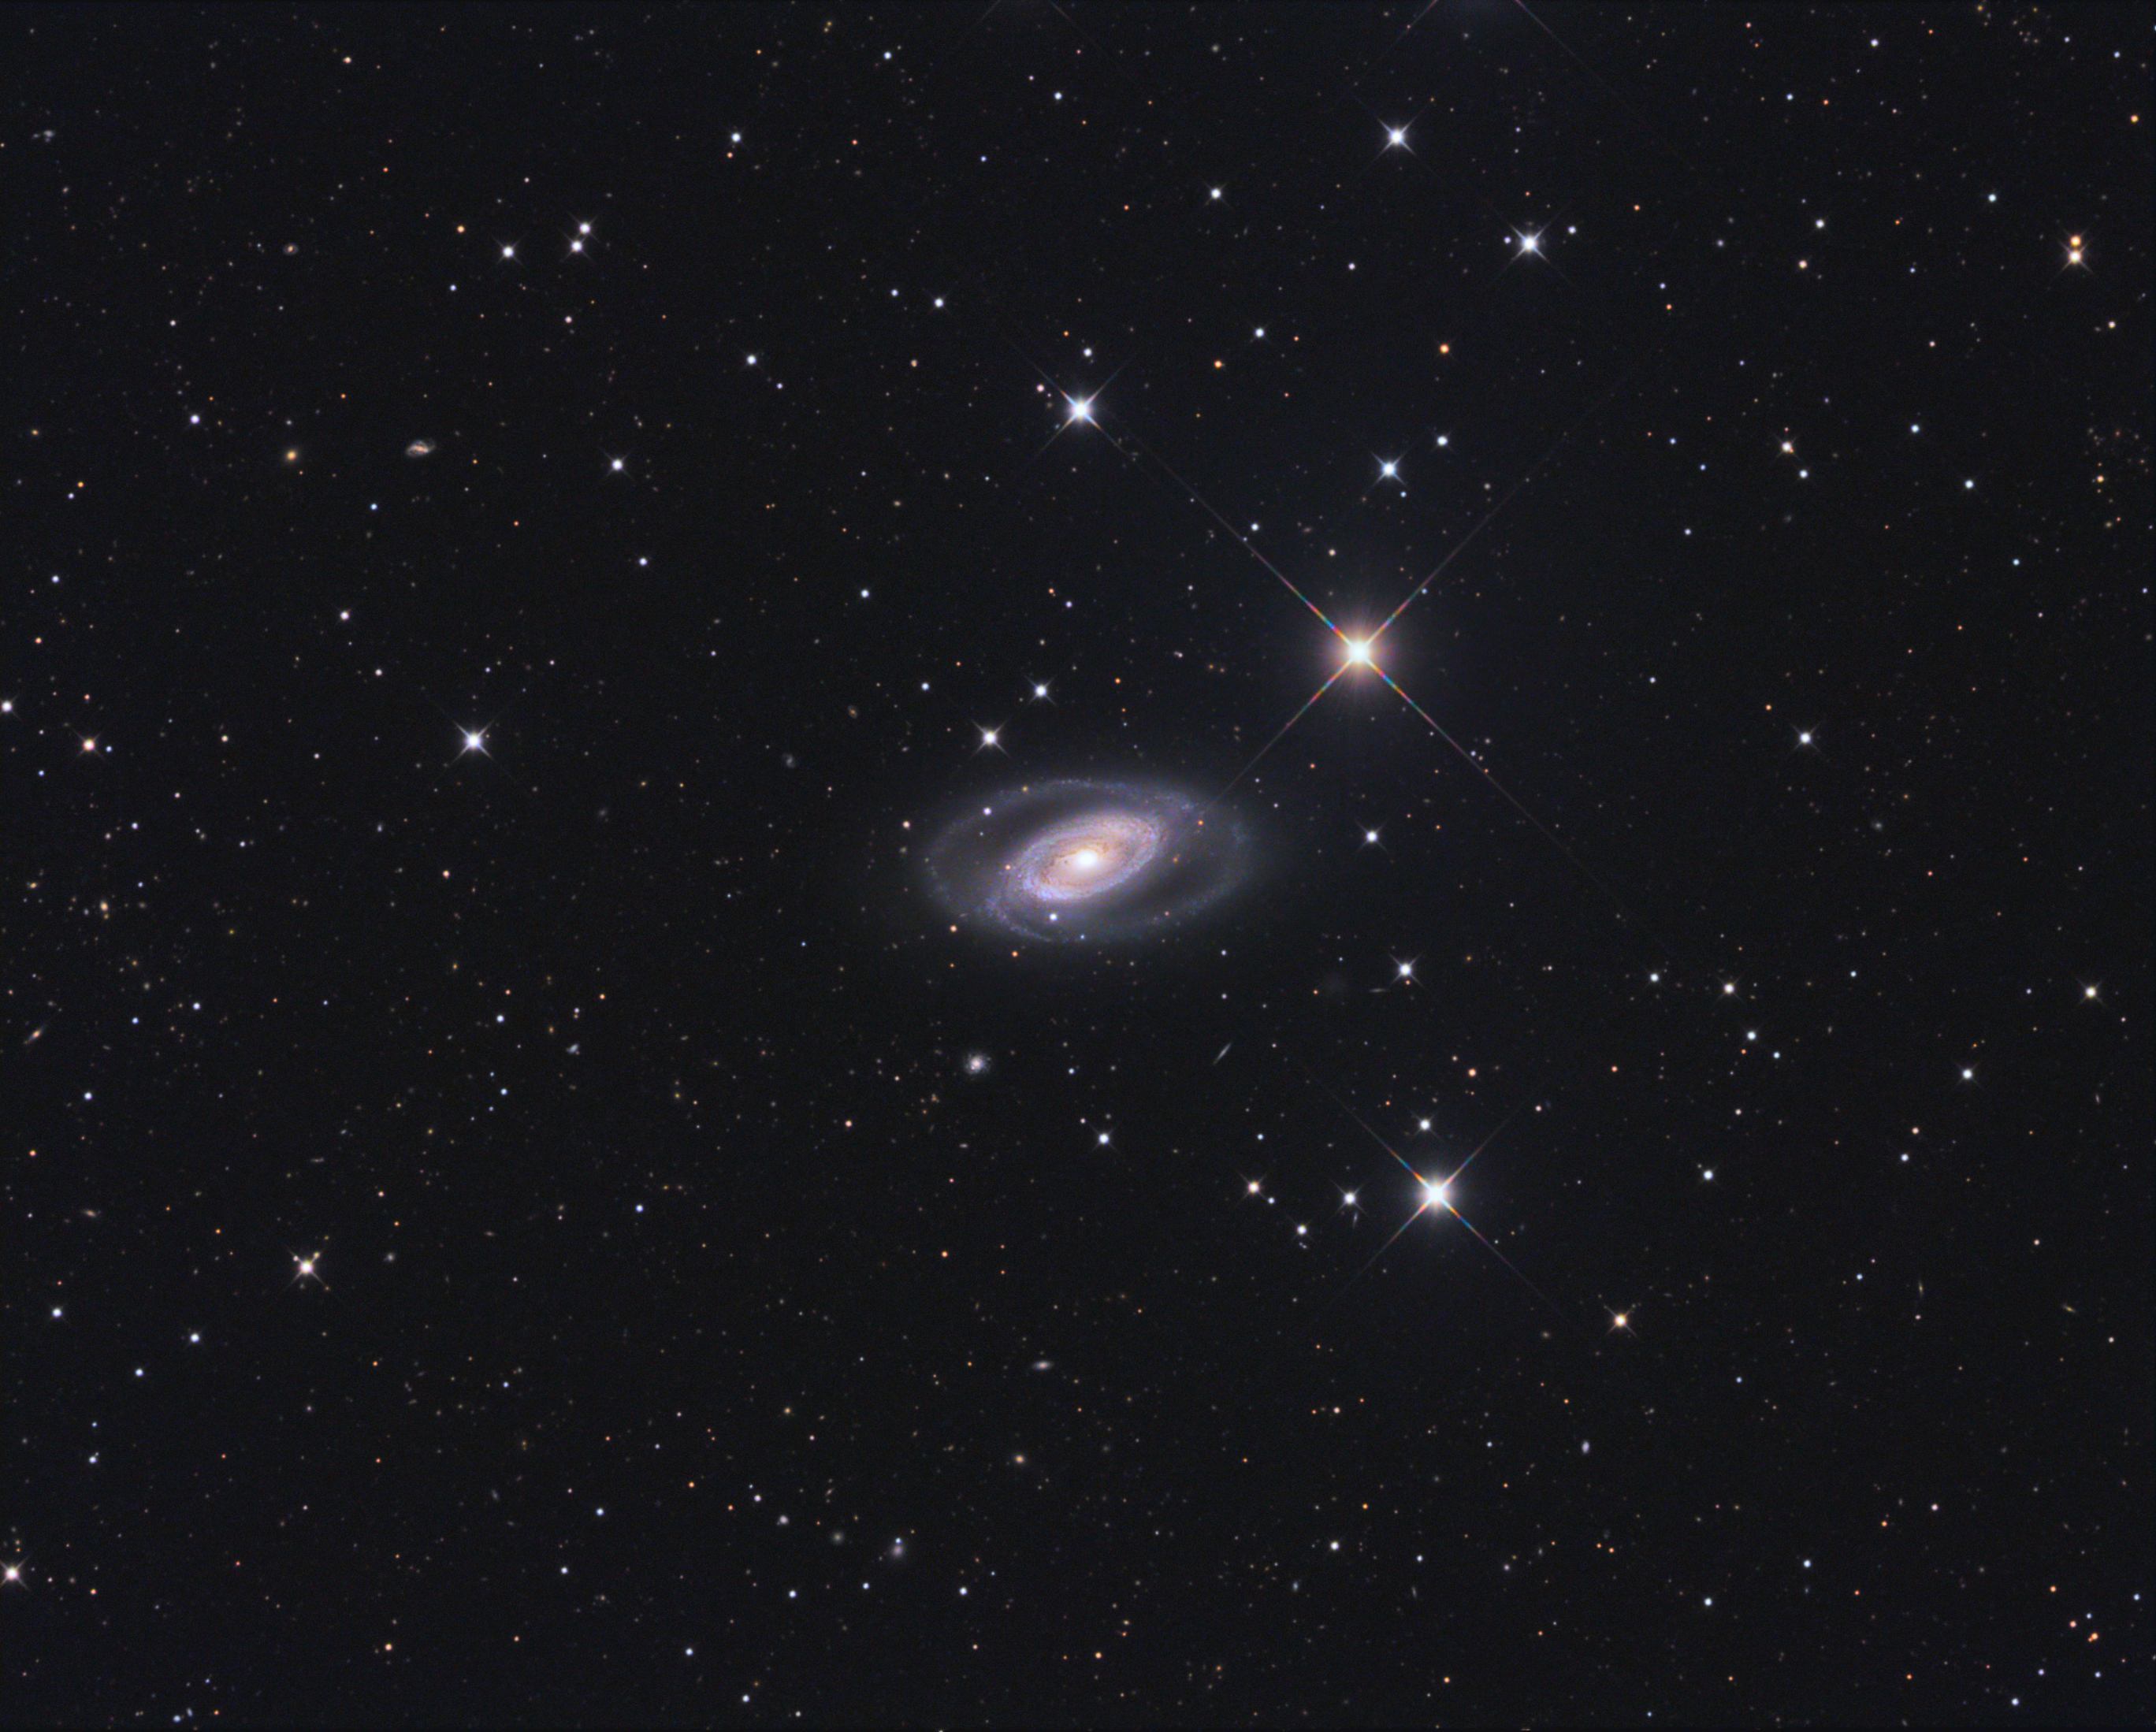 NGC 1350 in Fornax - Full Frame Full Resolution